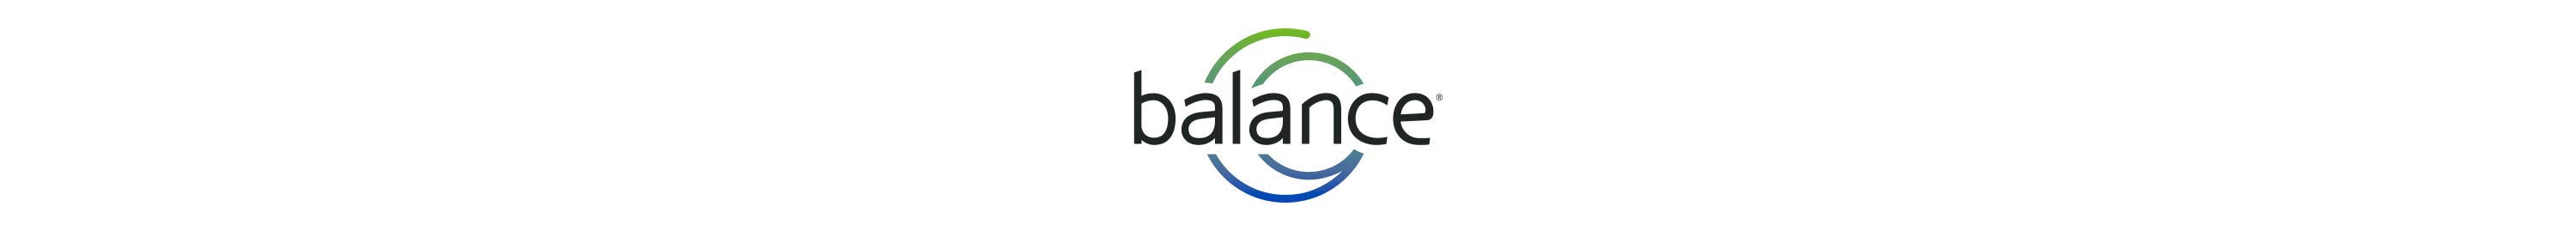 logo-mass-balance.jpg